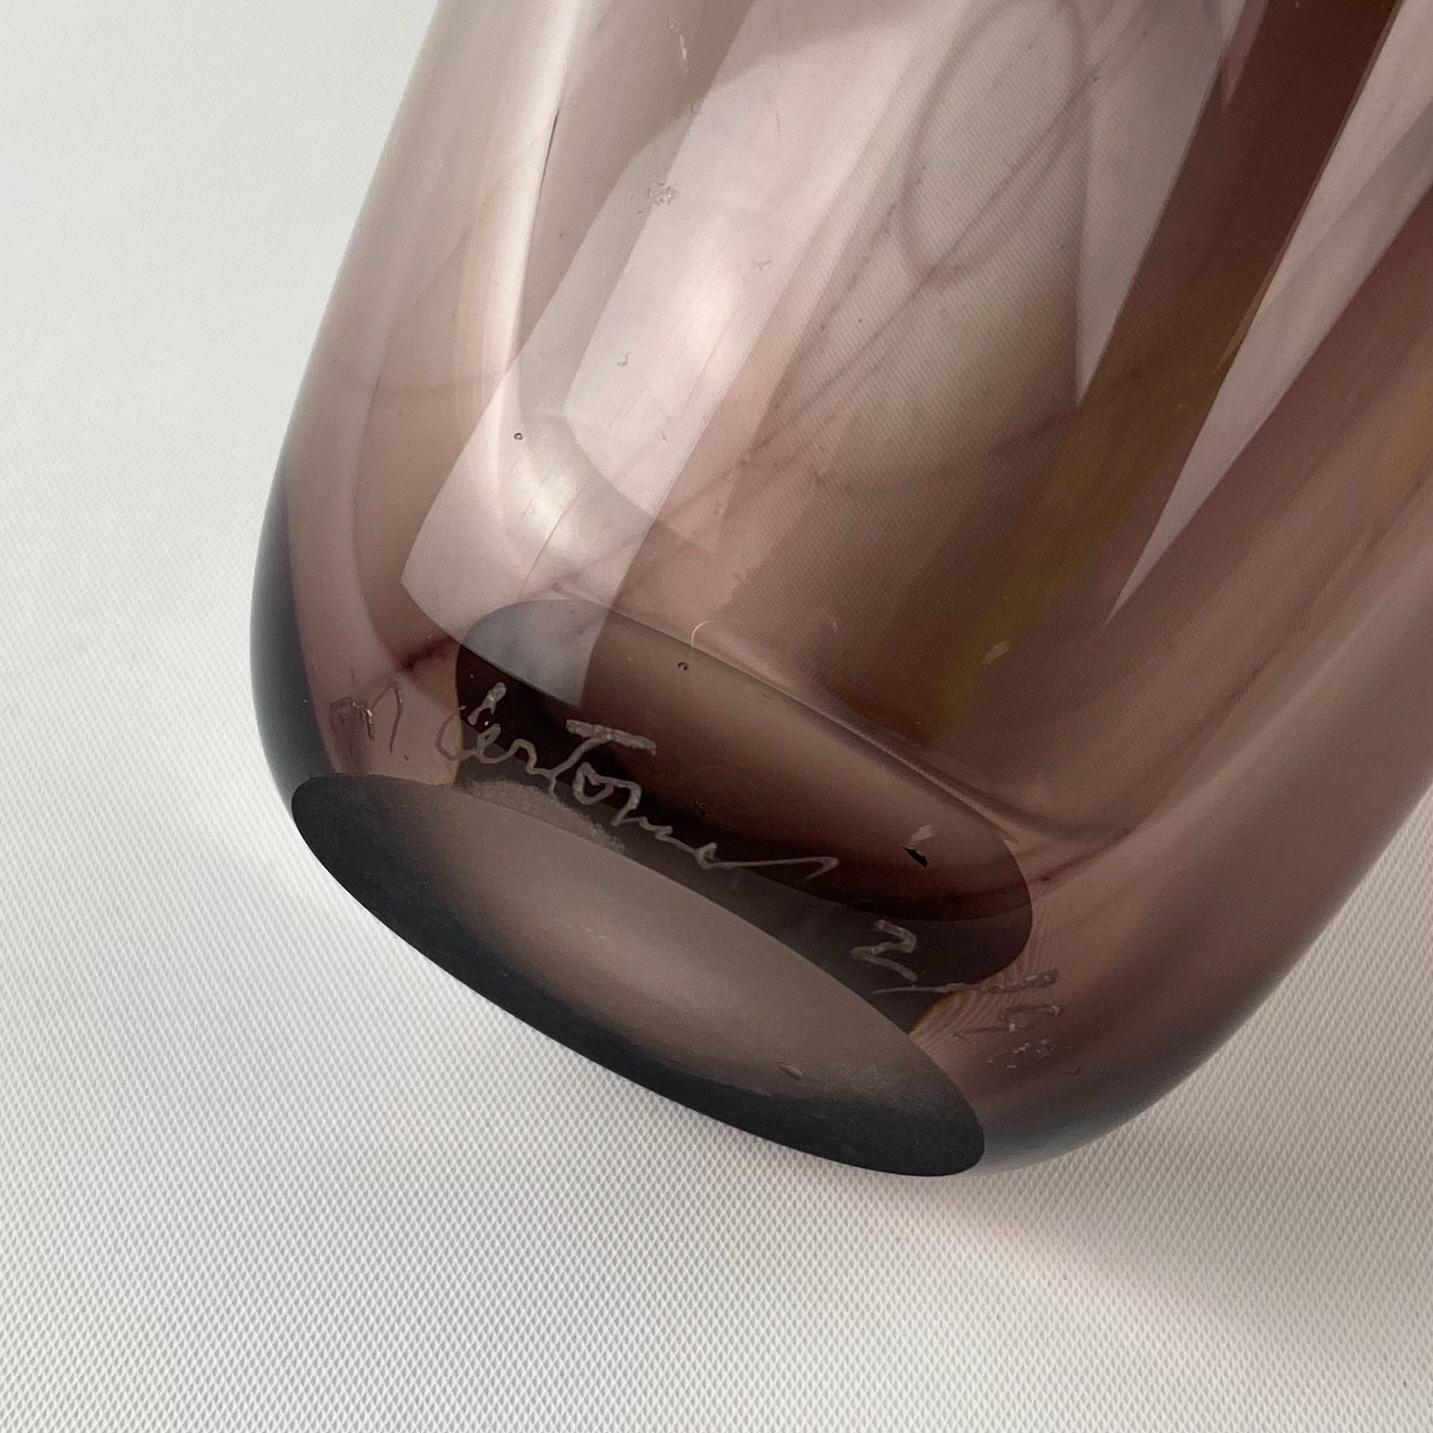 Artist Studio Signed Glass Vase